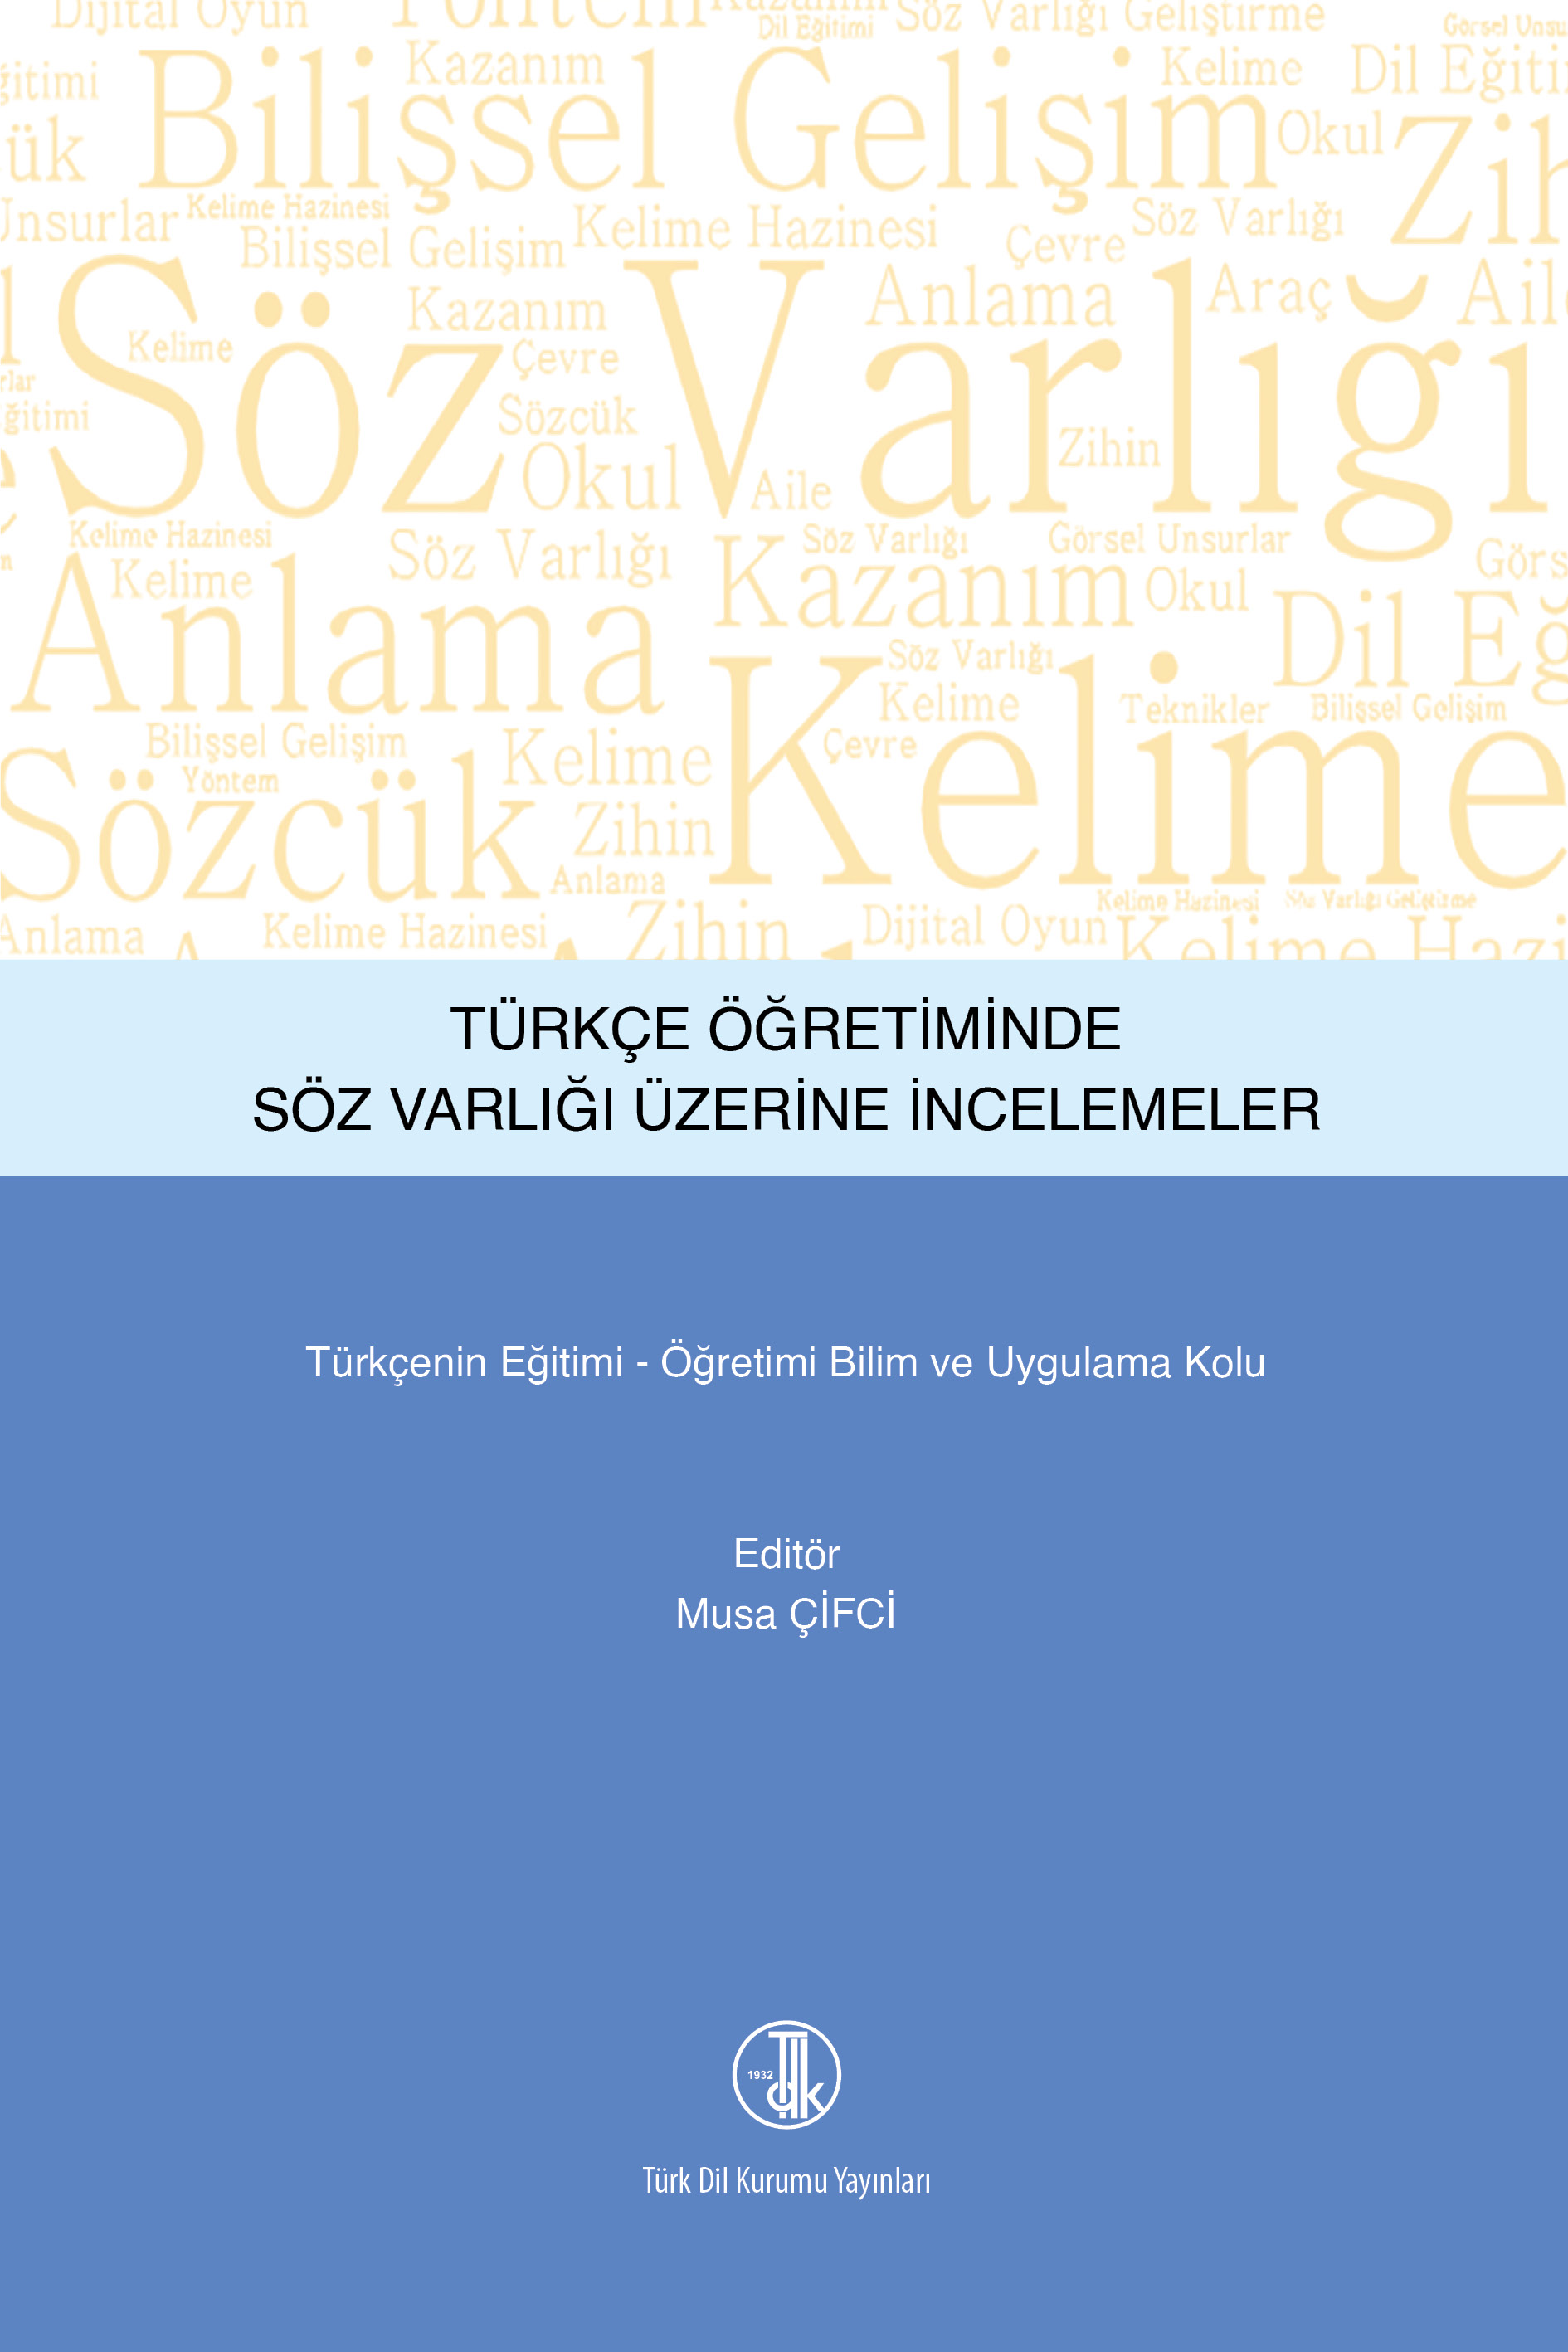 Türkçe Öğretiminde Söz Varlığı Üzerine İncelemeler, 2022